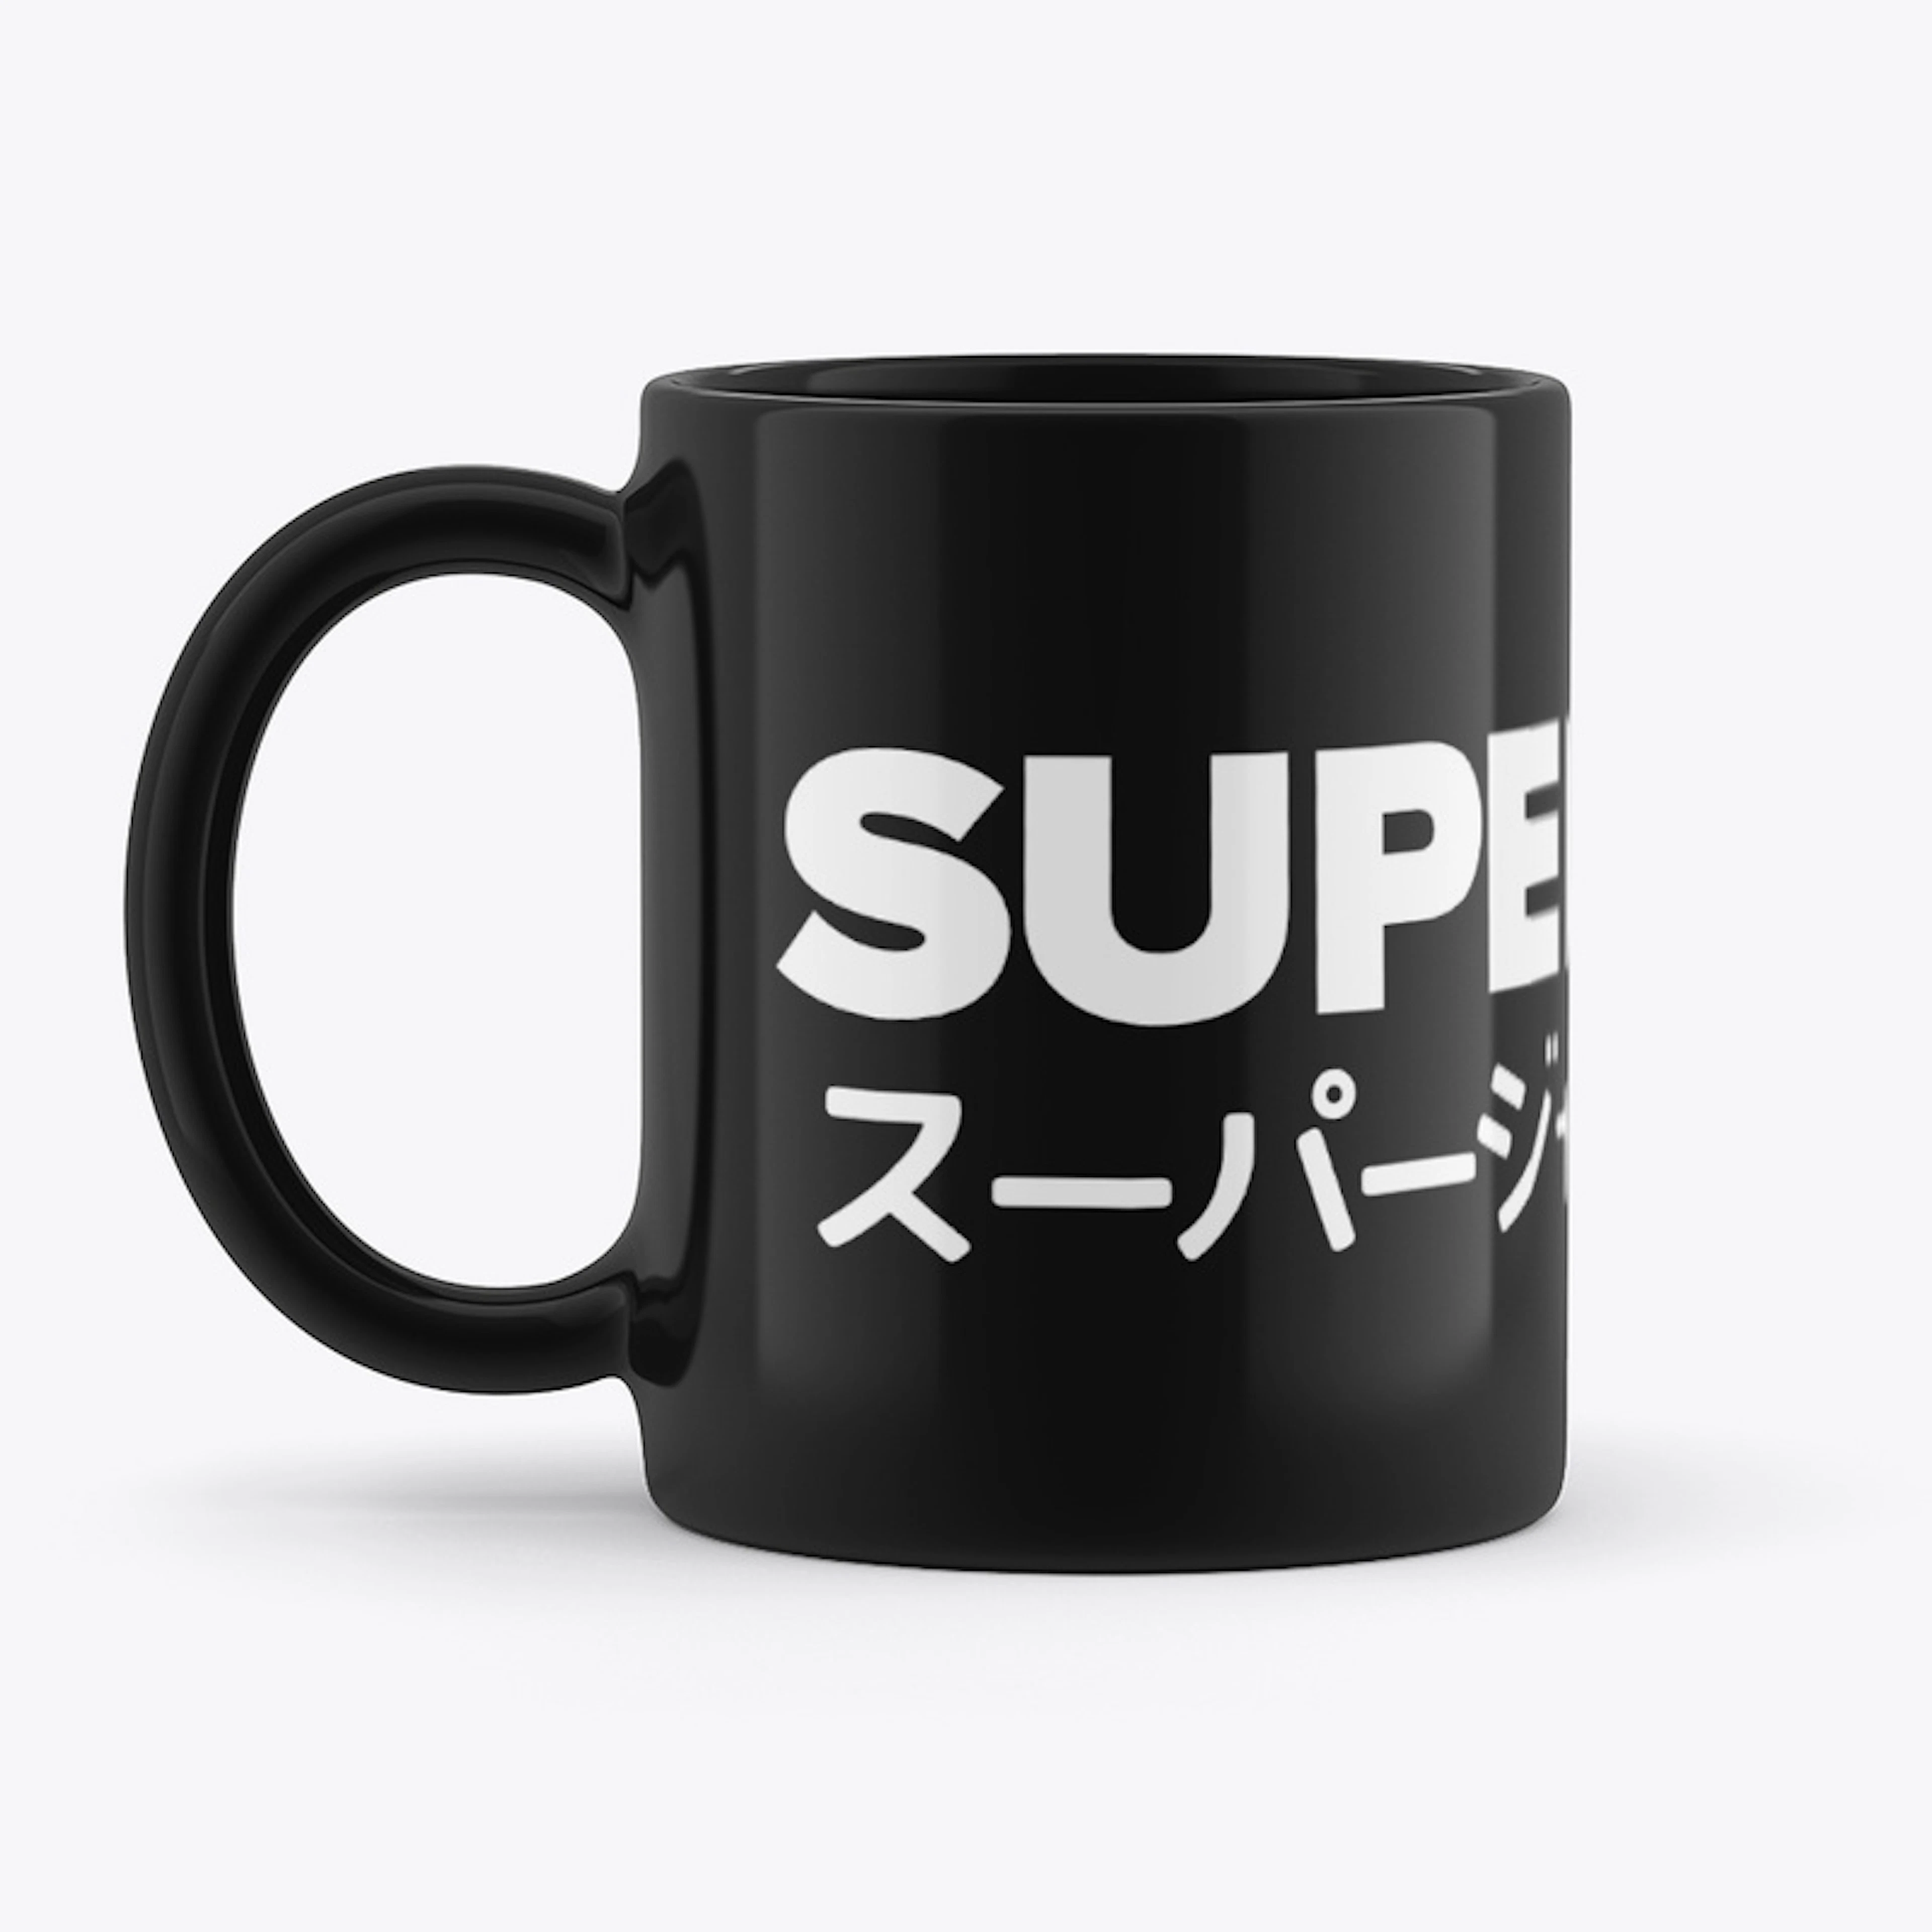 SUPERJUMP Mug